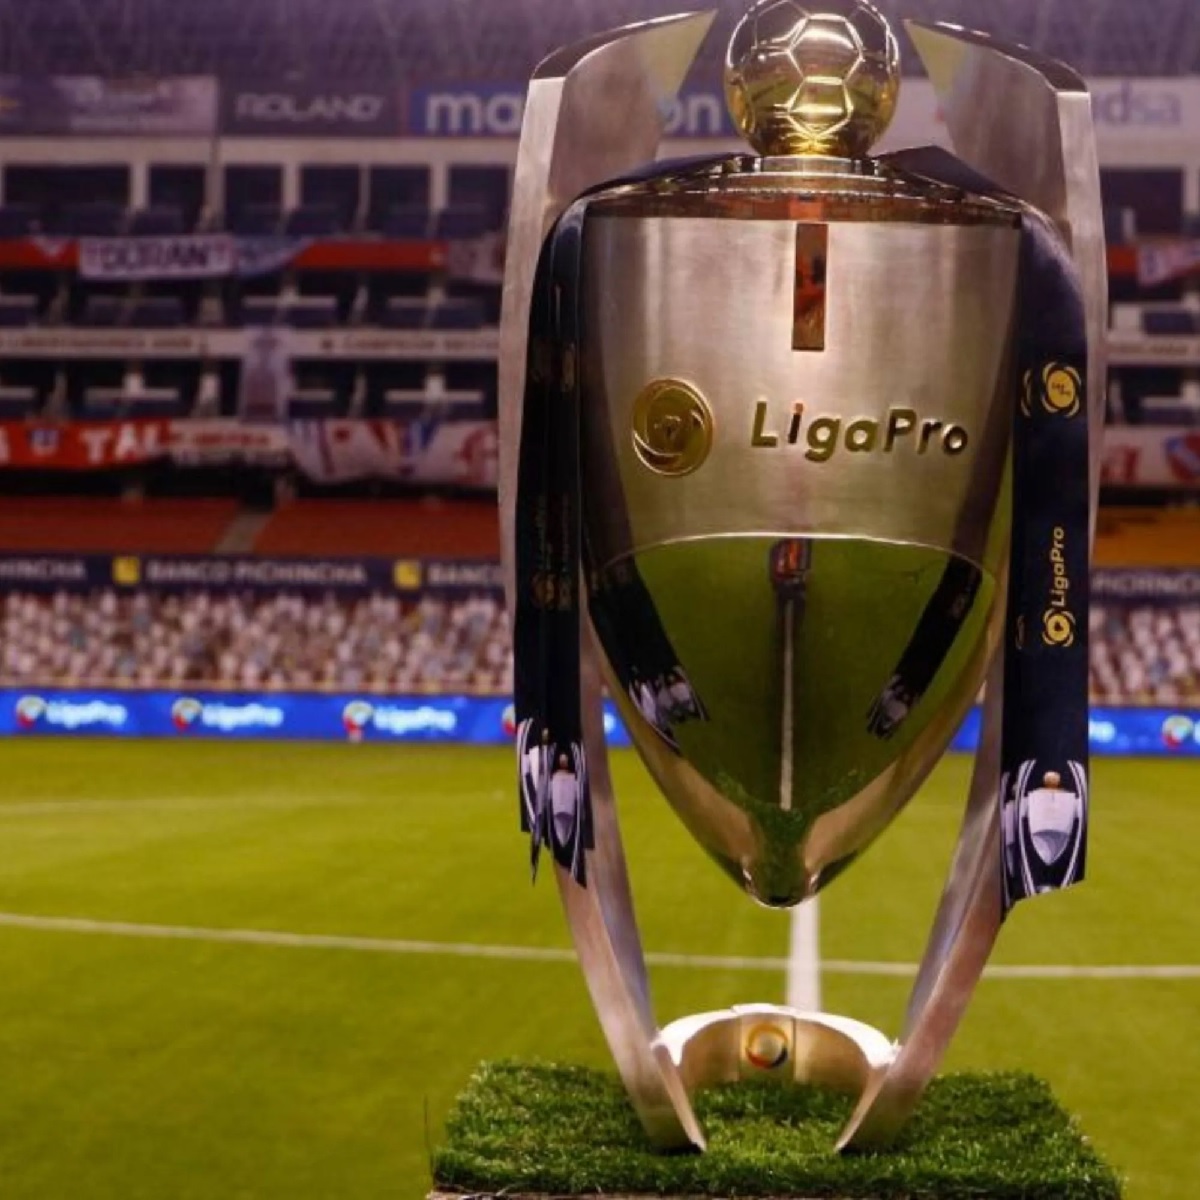 Las dos finales de la LigaPro se disputarán en el mismo horario, es decir desde las 16h30 y con una semana de diferencia.